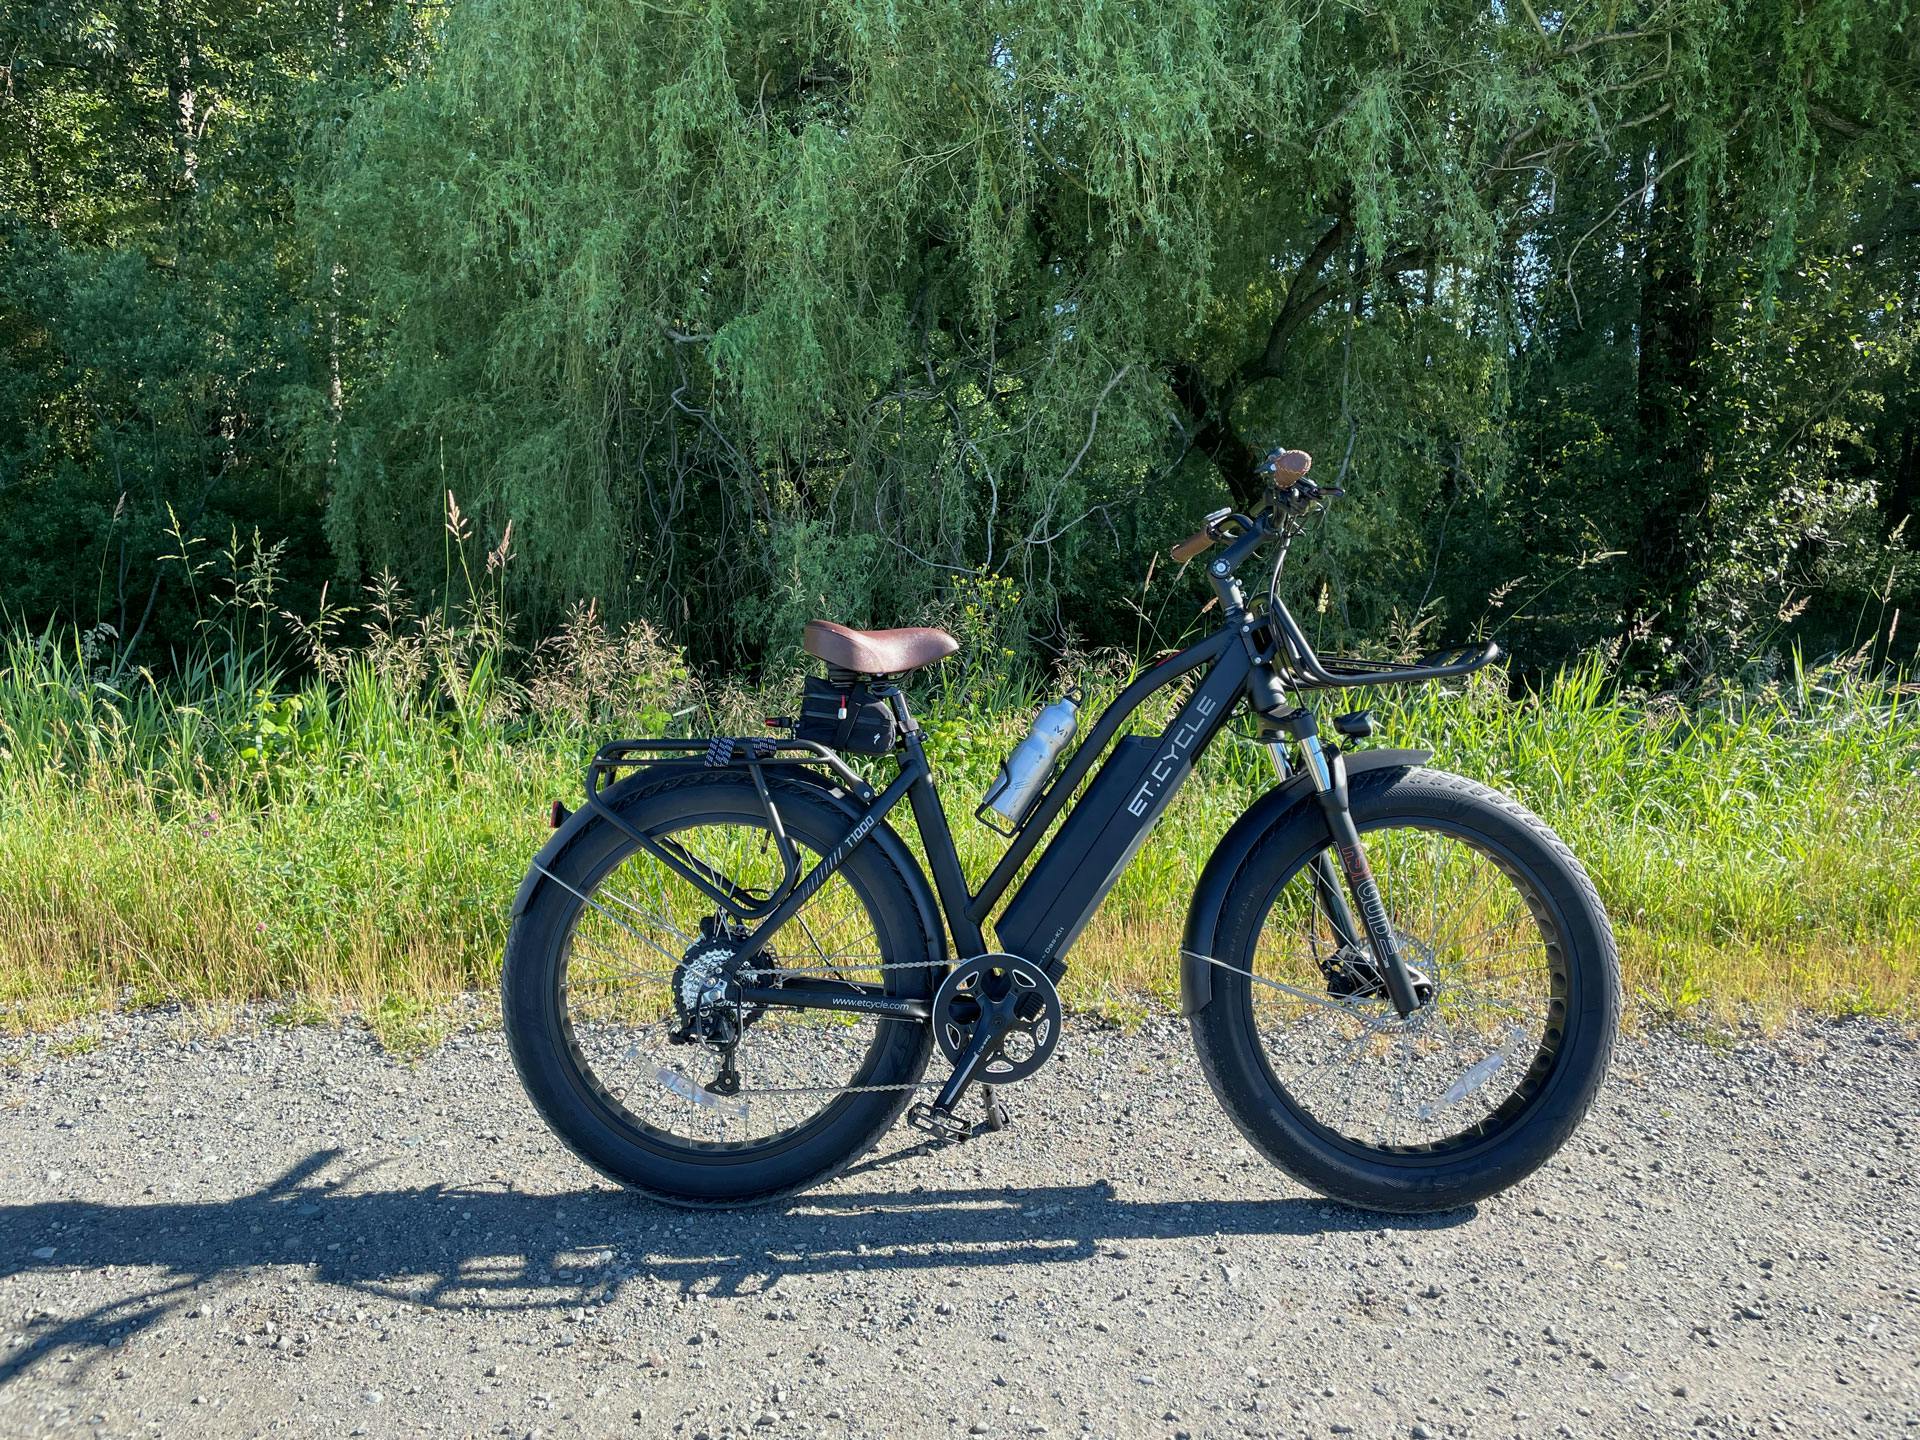 etcycle-t1000-electric-bicycle-6314-1920x1440.jpg